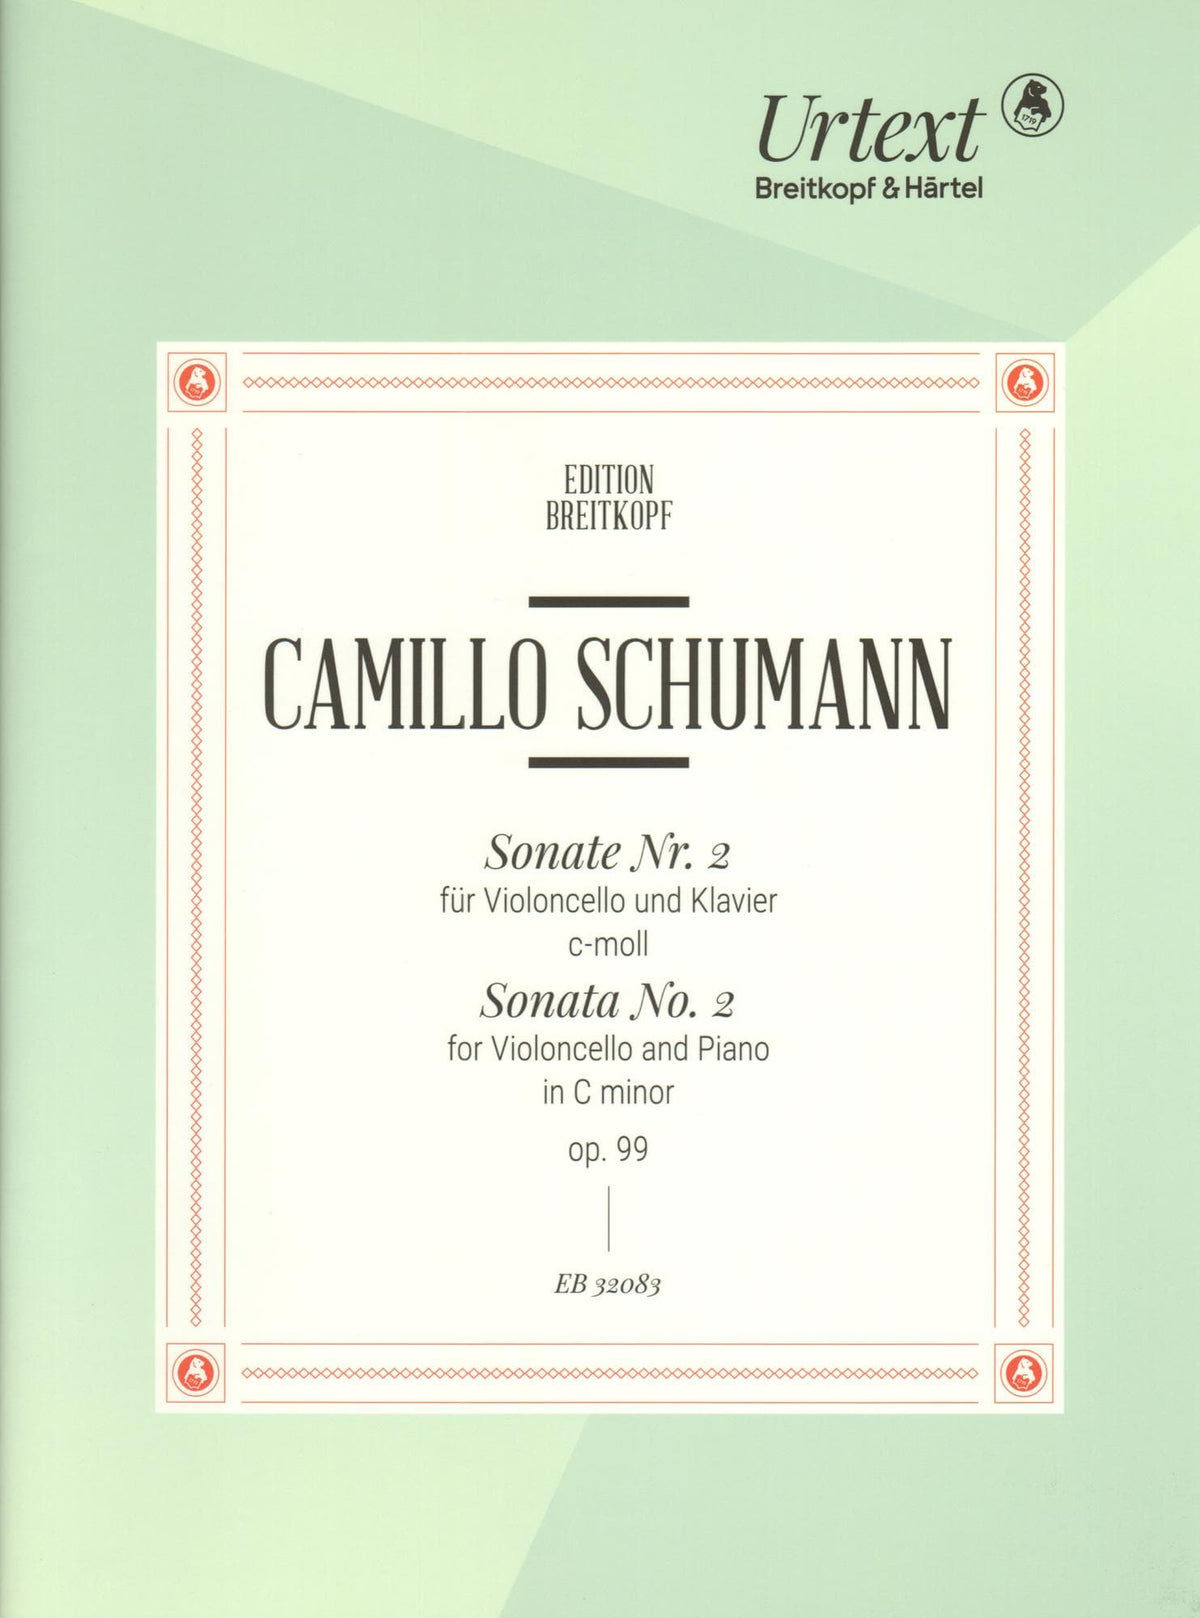 Schumann, Camillo - Sonata No. 2 in C minor, Op. 99 - for Cello and Piano - Breitkopf & Hartel URTEXT